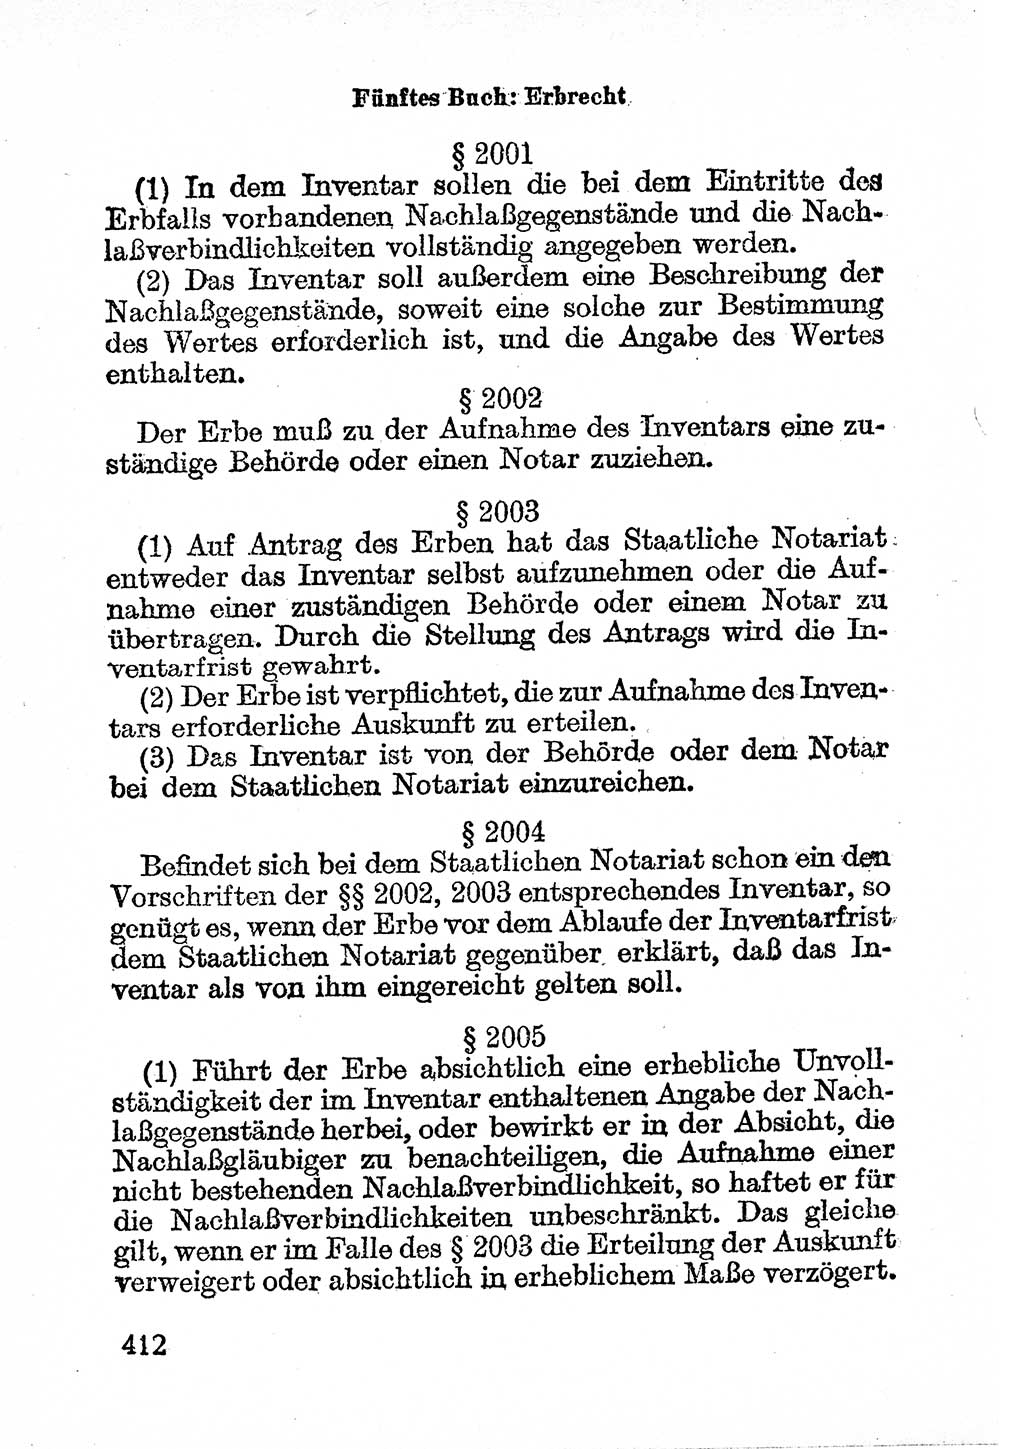 Bürgerliches Gesetzbuch (BGB) nebst wichtigen Nebengesetzen [Deutsche Demokratische Republik (DDR)] 1956, Seite 412 (BGB Nebenges. DDR 1956, S. 412)